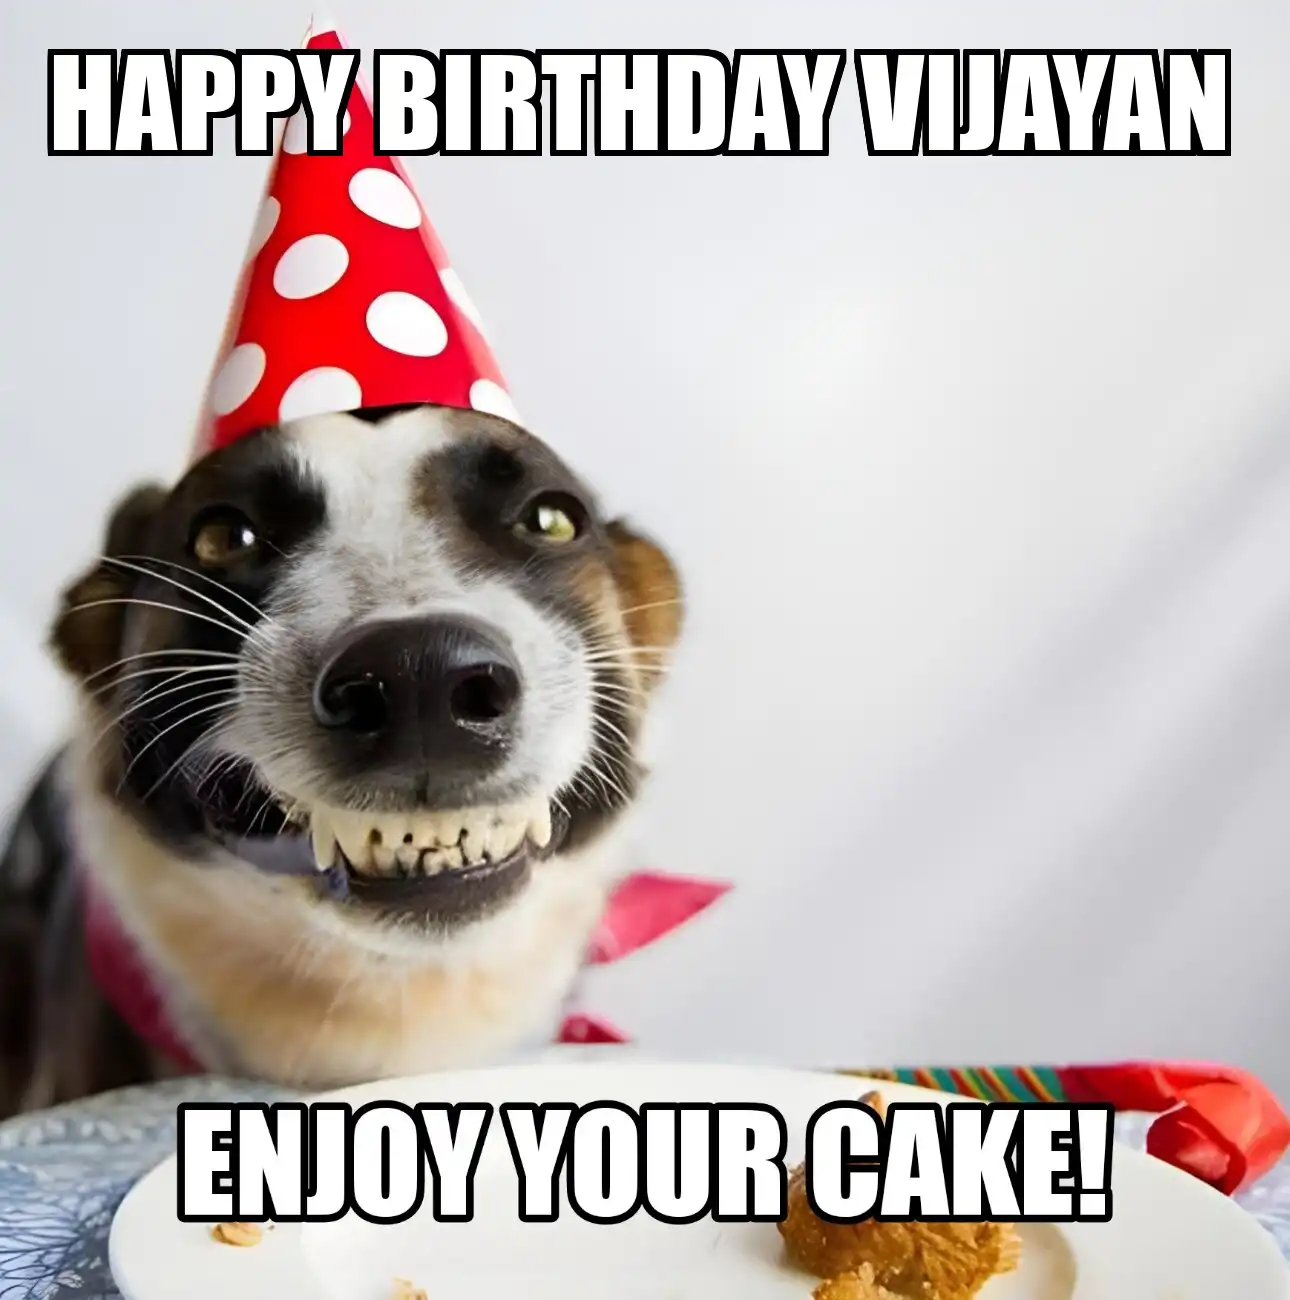 Happy Birthday Vijayan Enjoy Your Cake Dog Meme